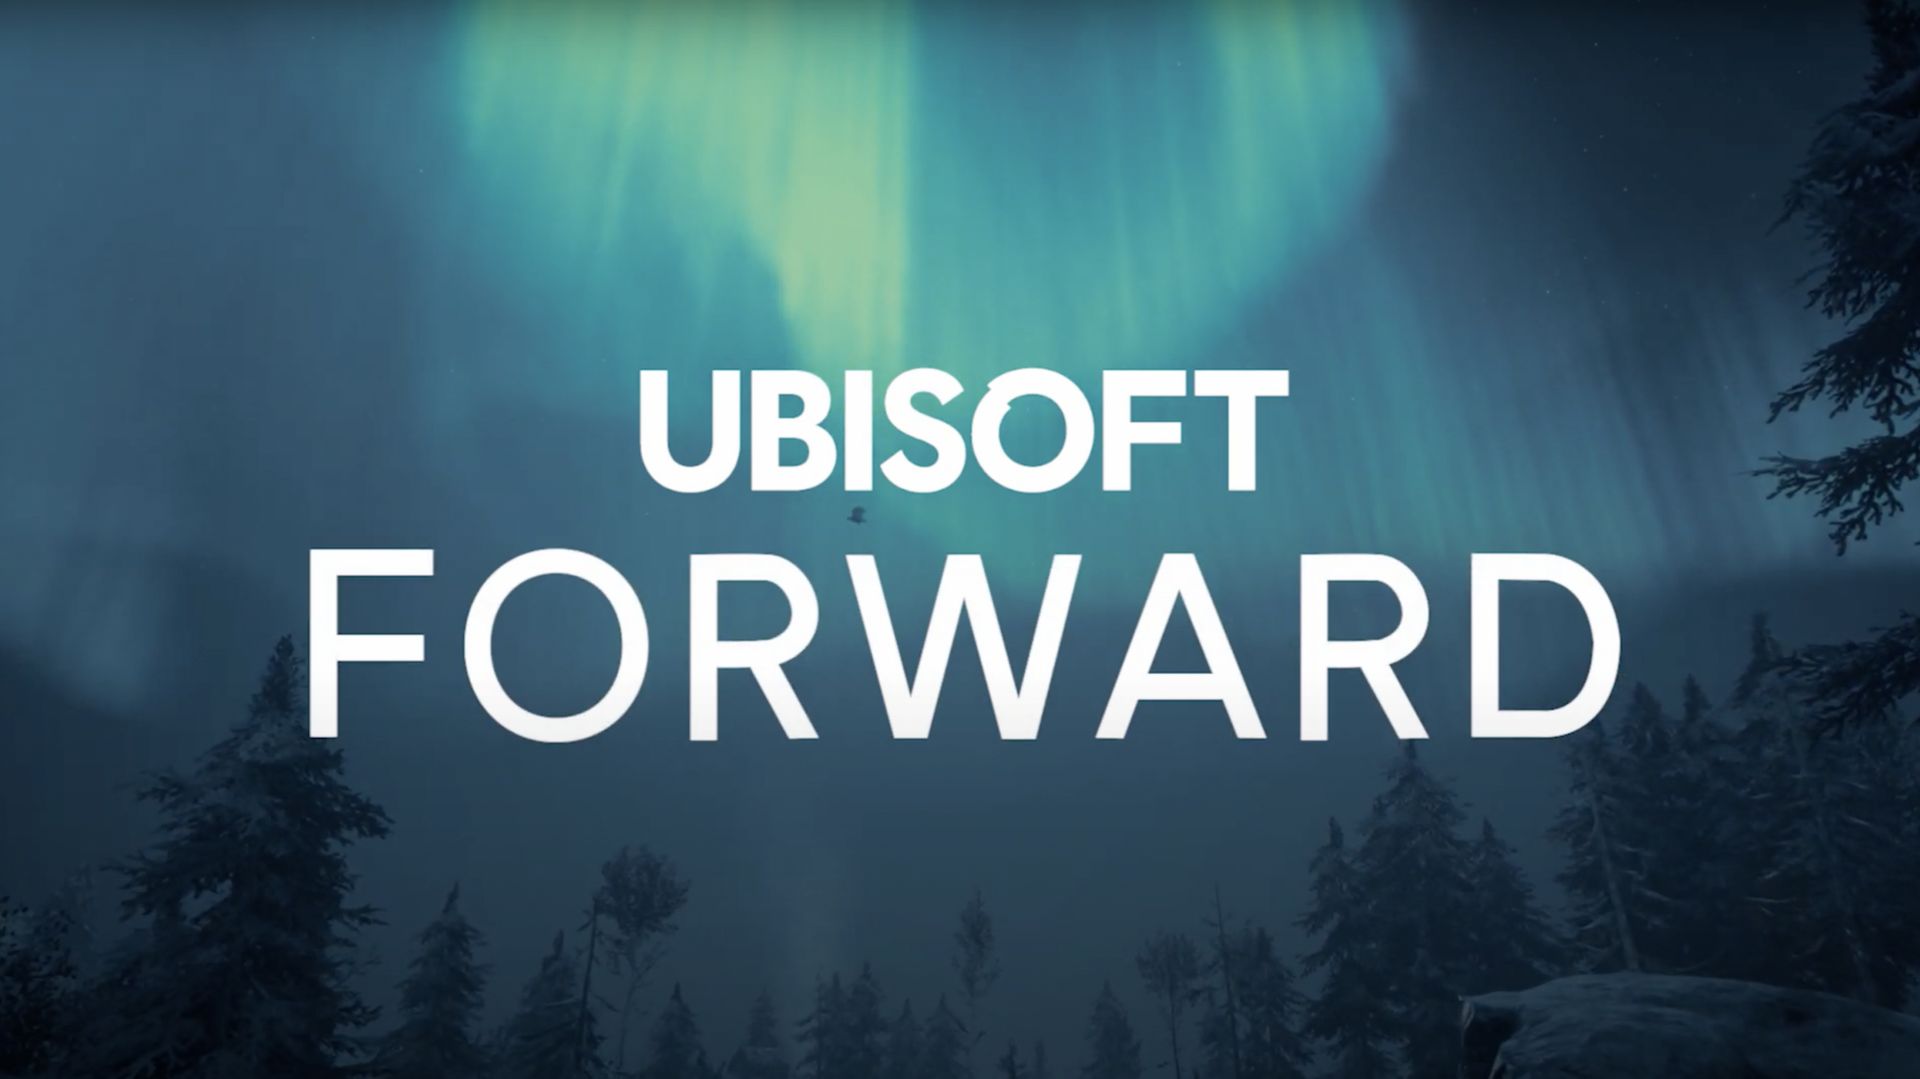 Ubisoft offrira Watch Dogs 2 sur PC ce dimanche lors de l’événement “Forward”